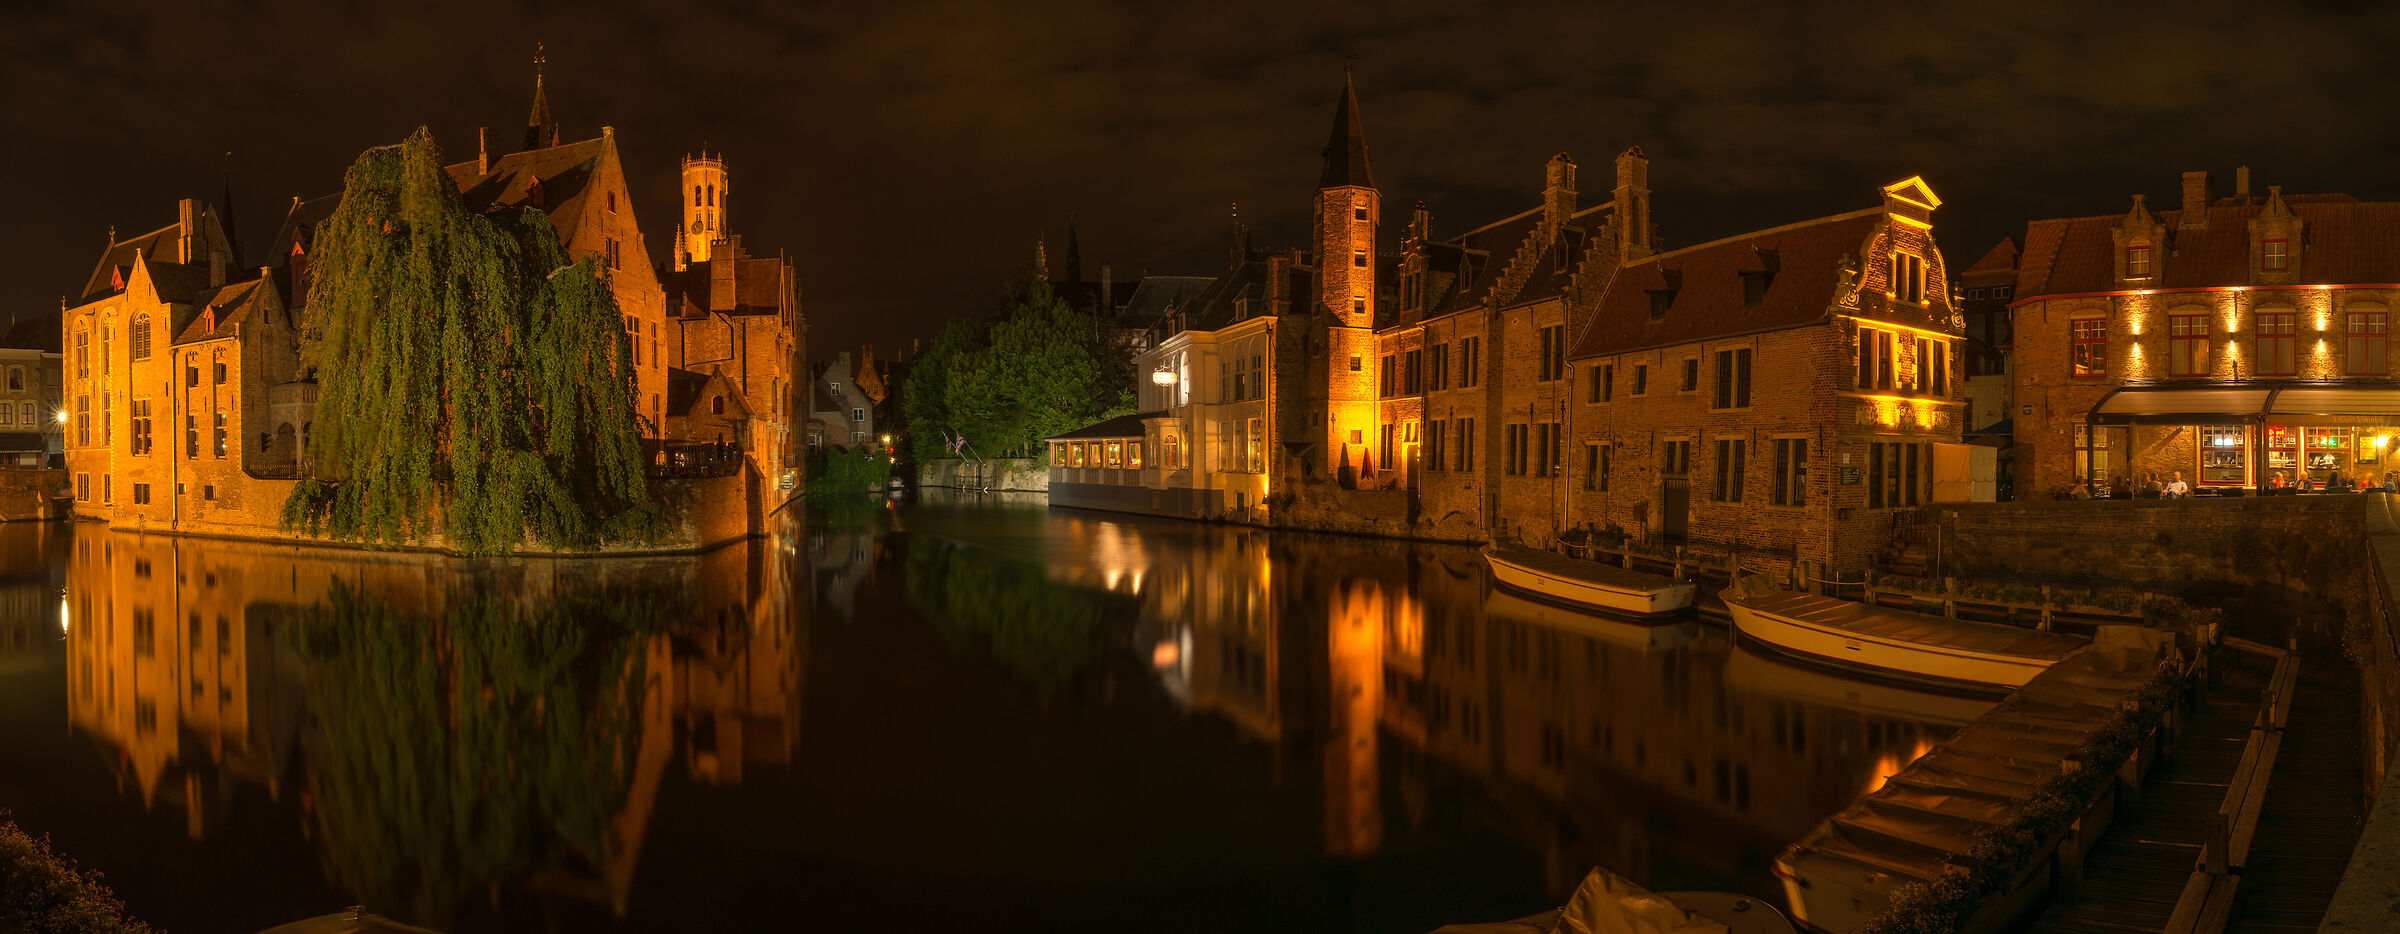 Bruges night pic...